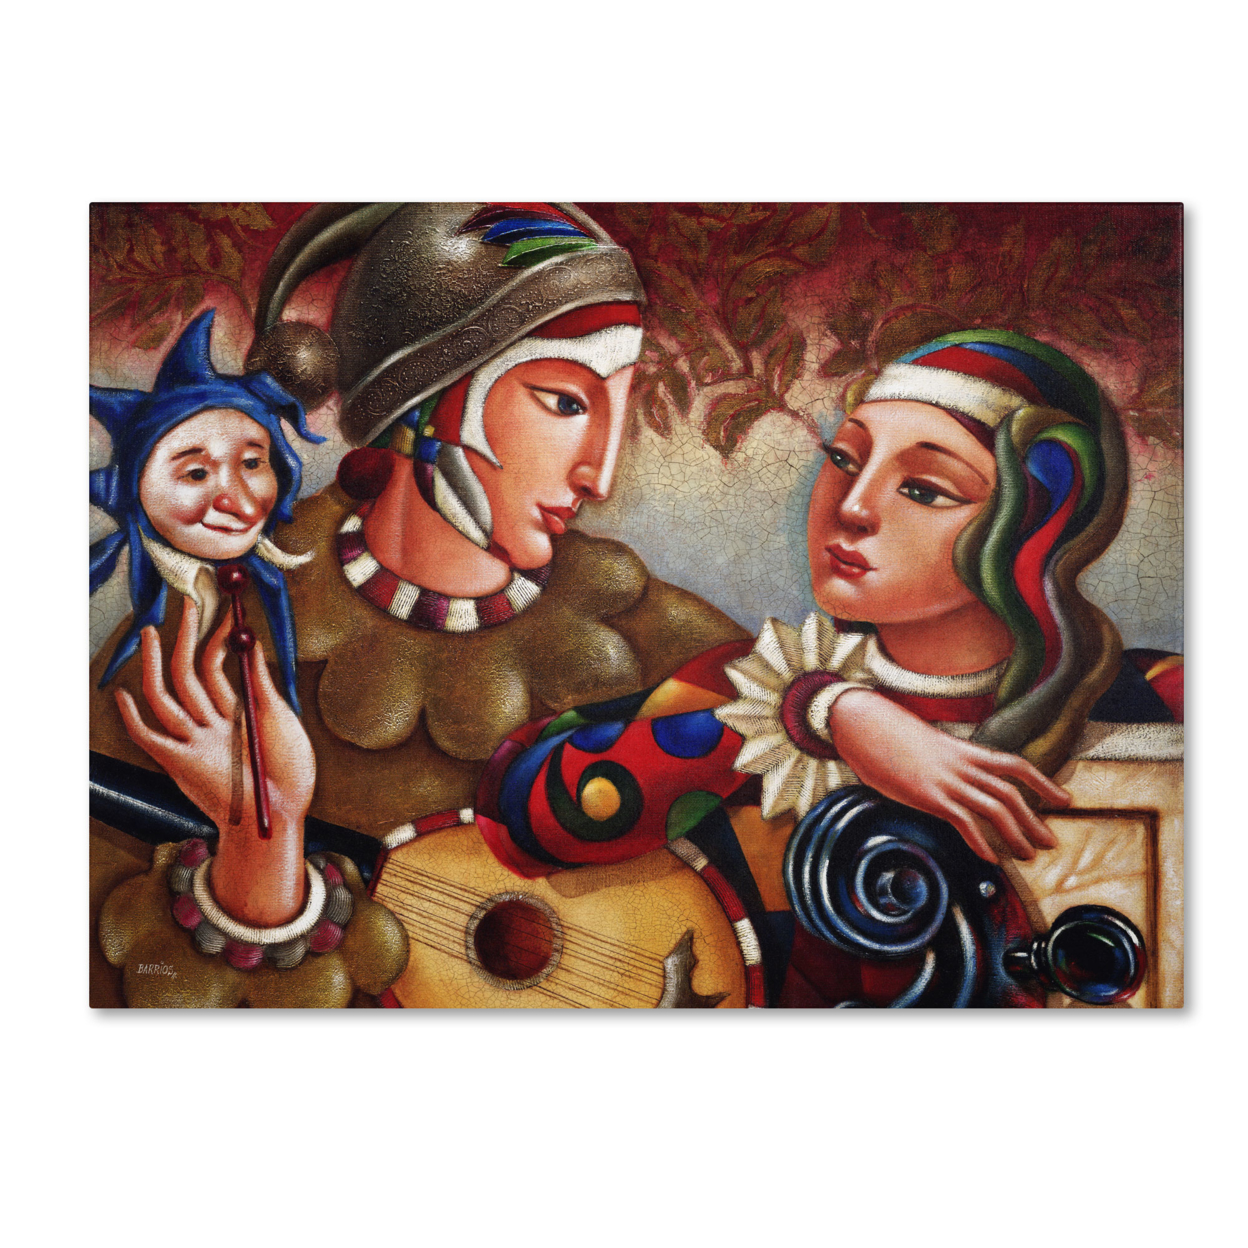 Edgar Barrios 'Romanza' Canvas Wall Art 35 X 47 Inches